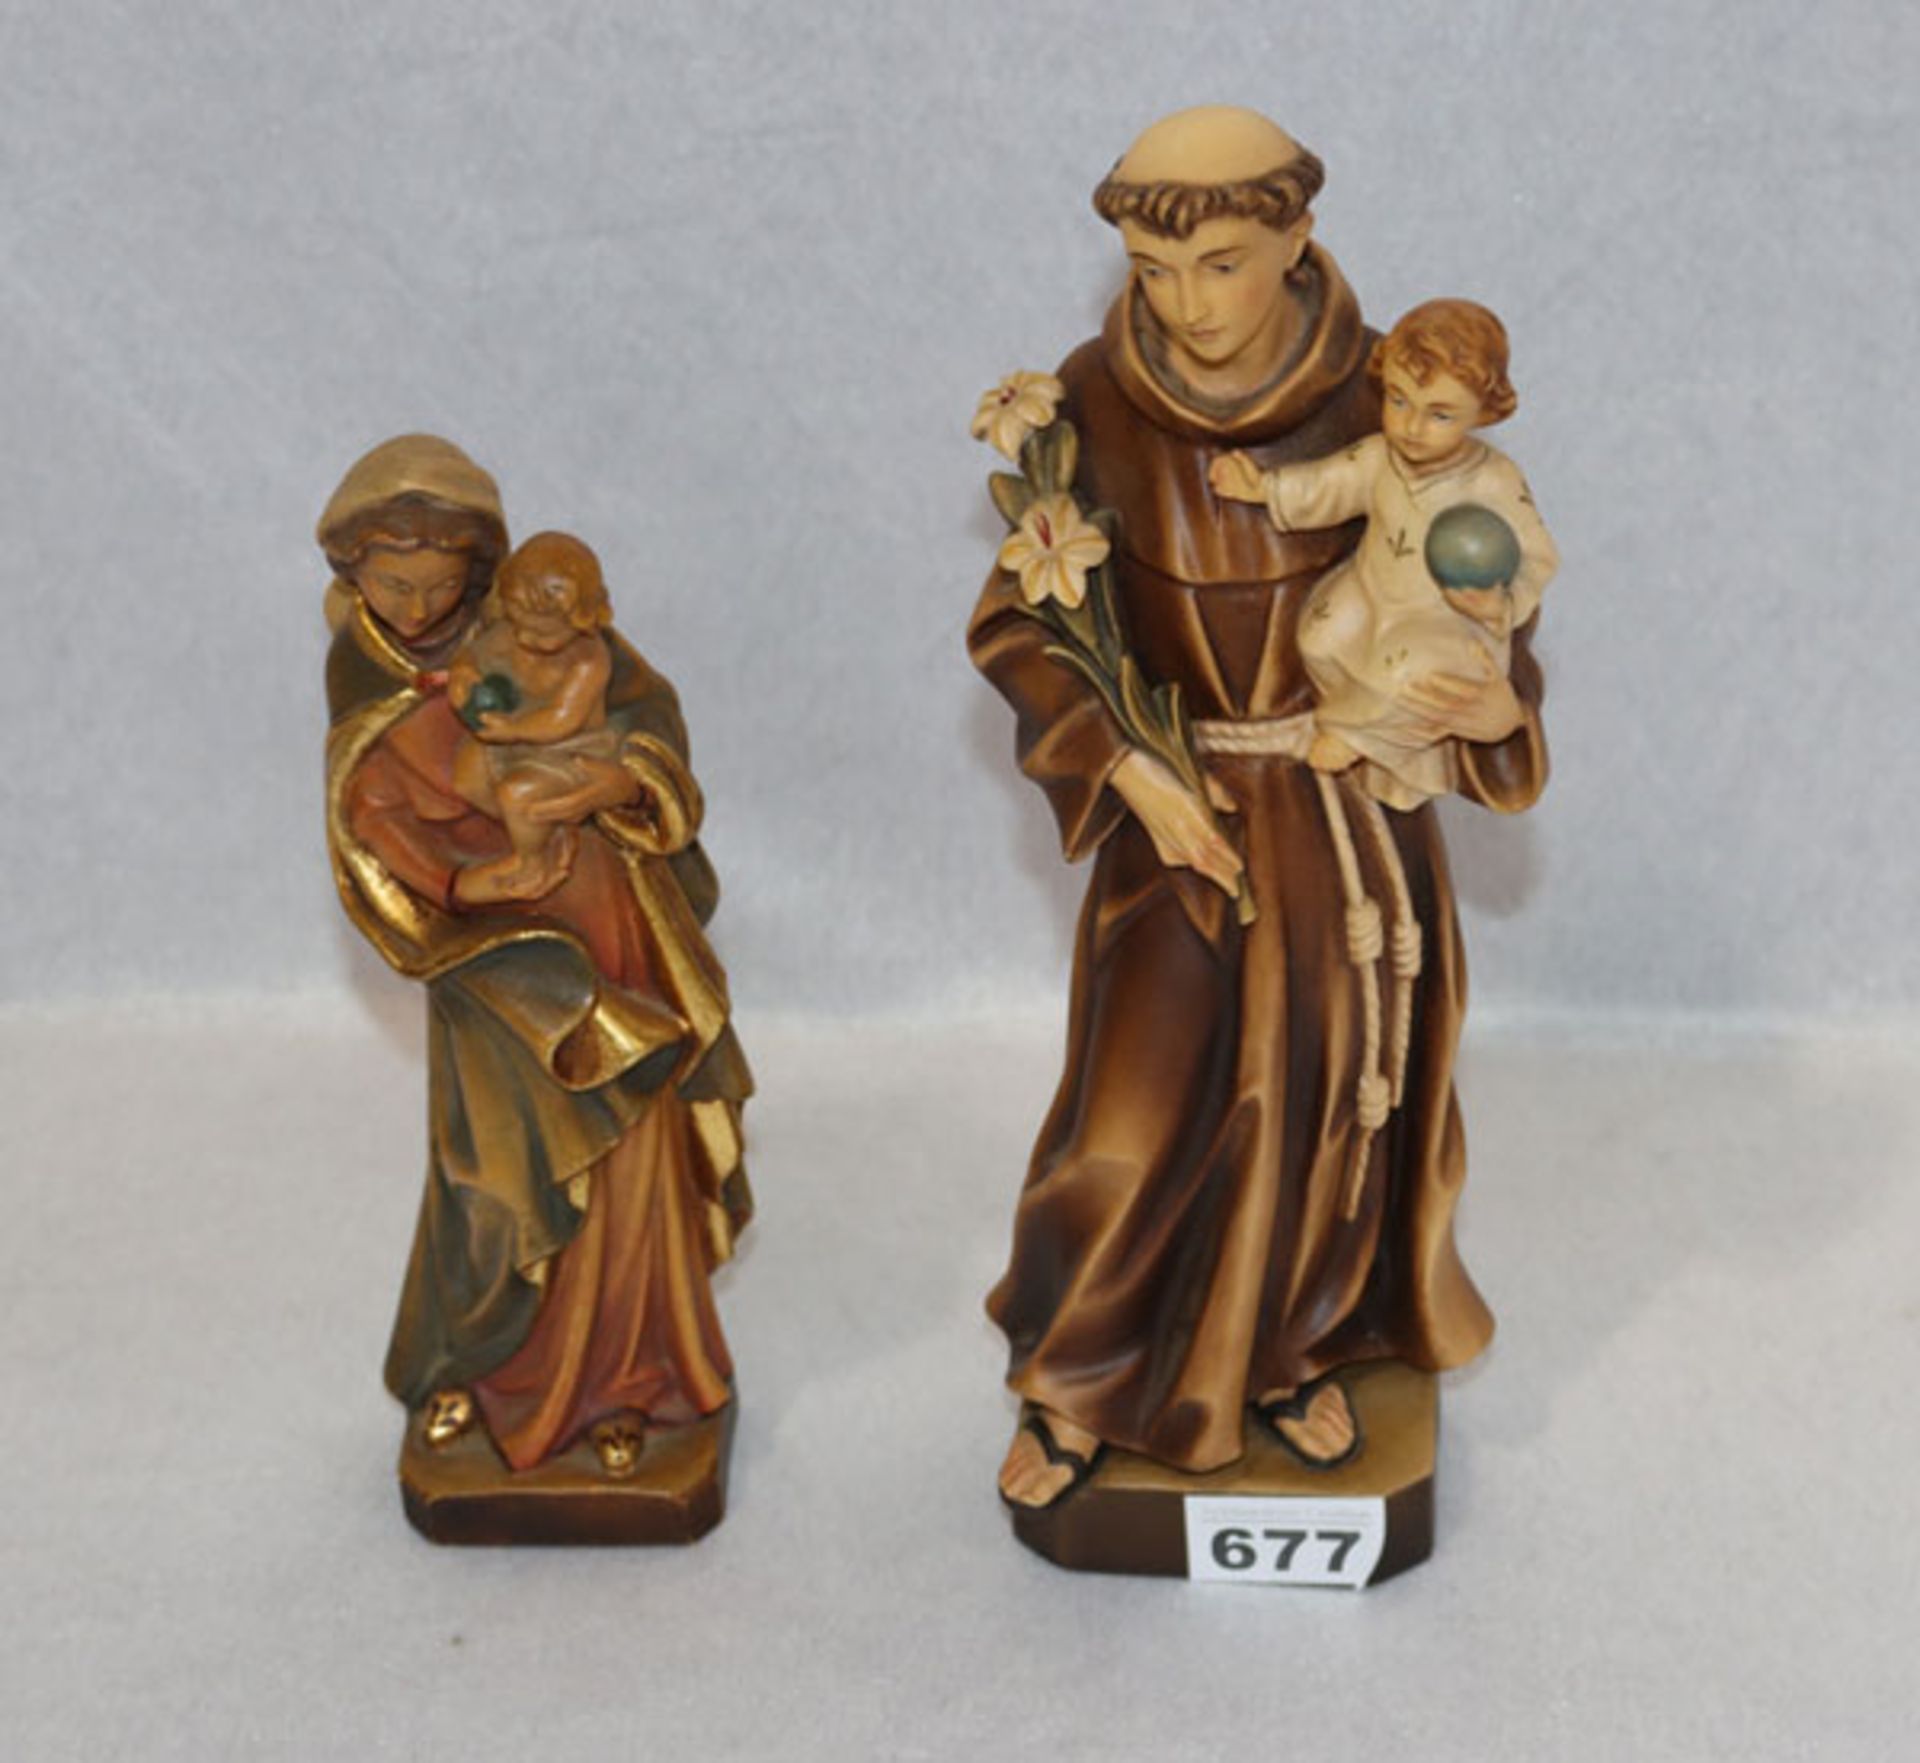 2 Holzfiguren 'Maria mit Kind', H 24 cm, und 'Heiliger Antonius', H 30 cm, beide farbig gefaßt